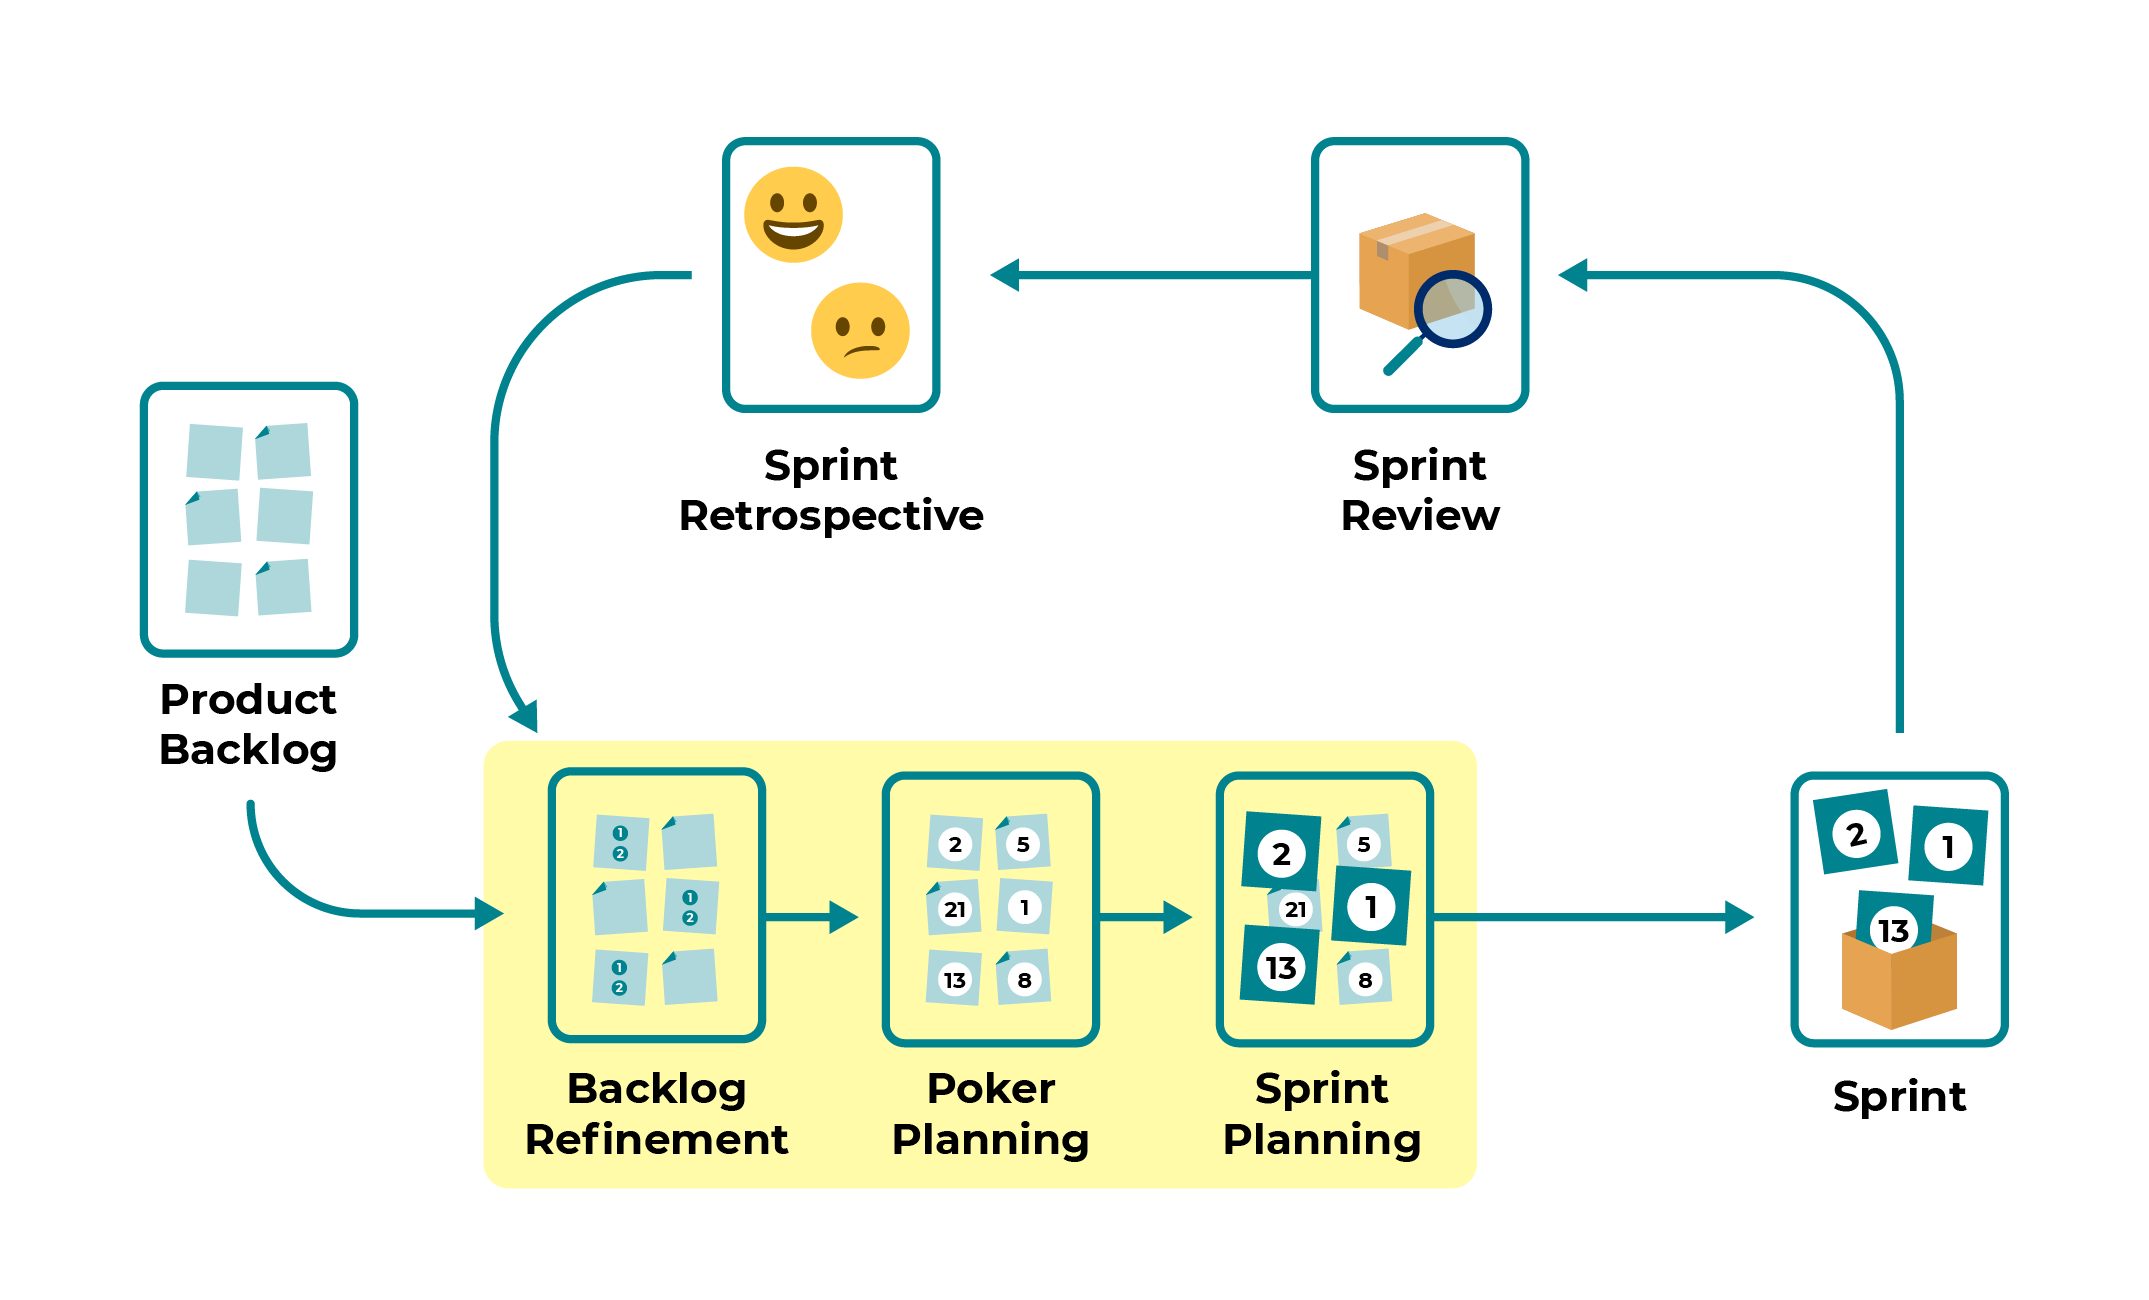 Illustration des différentes étapes de préparation d'un Sprint. Le Backlog Refinement, le Poker Planning et le Sprint Planning sont mis en relief.